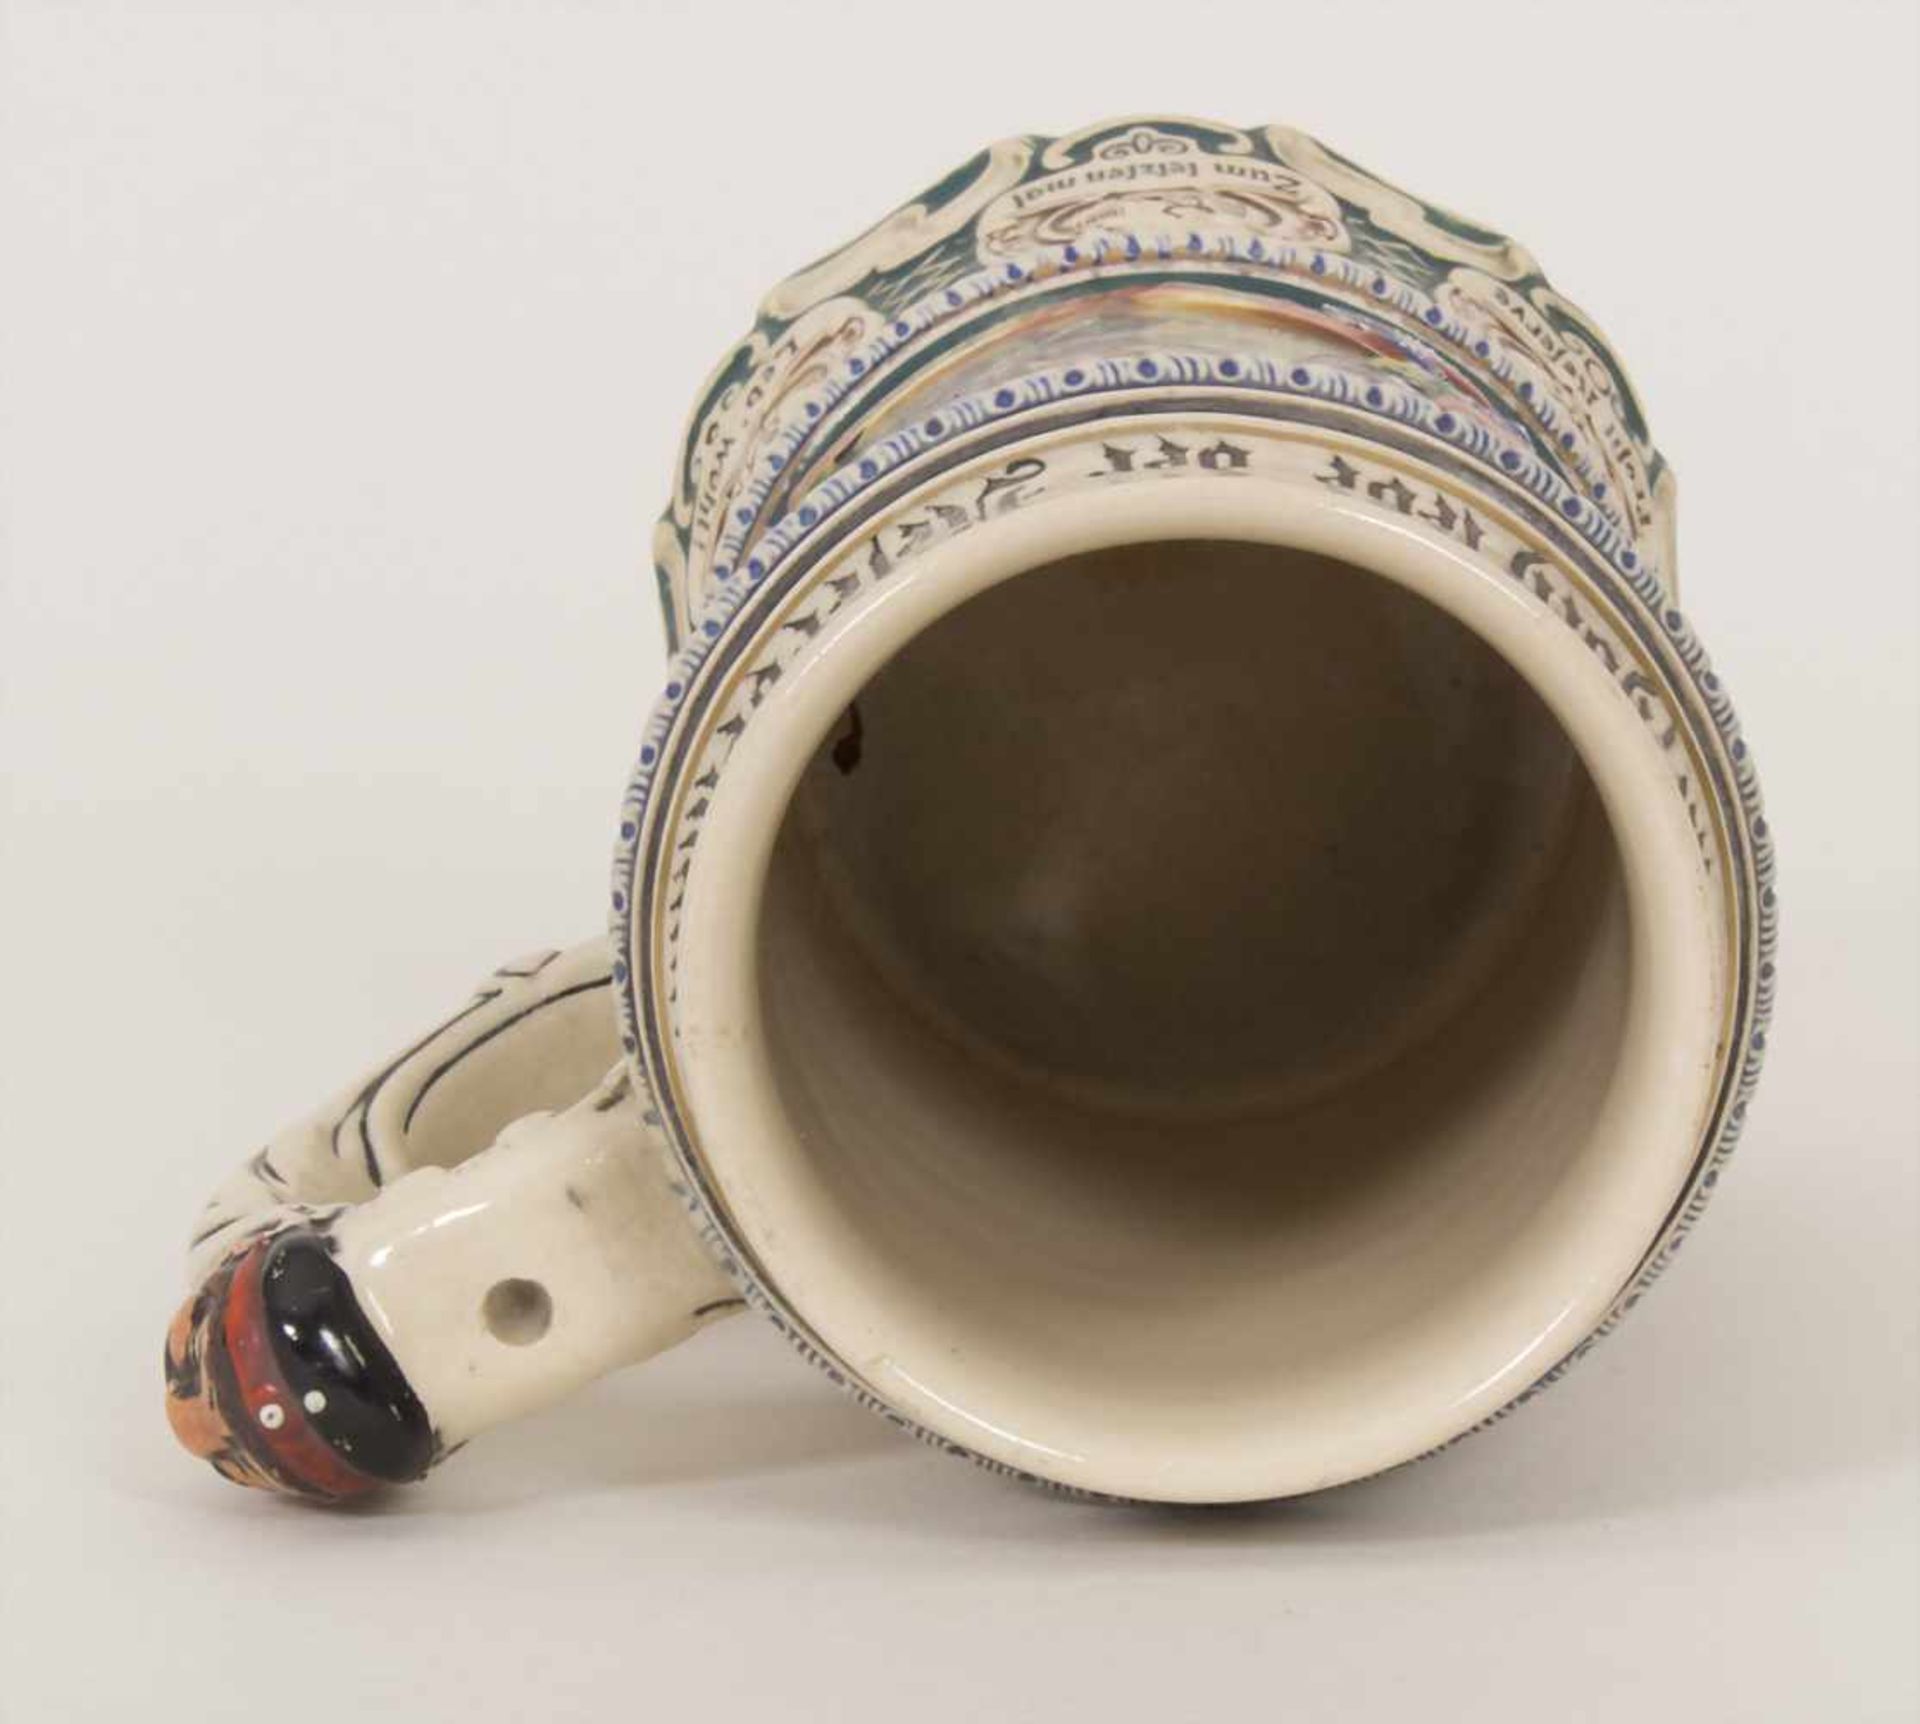 Reservistenkrug / A reservist beer mug, Arolsen, Hessen, 1906Einheit: '11. Comp. Inft. Rgt. von - Image 11 of 21